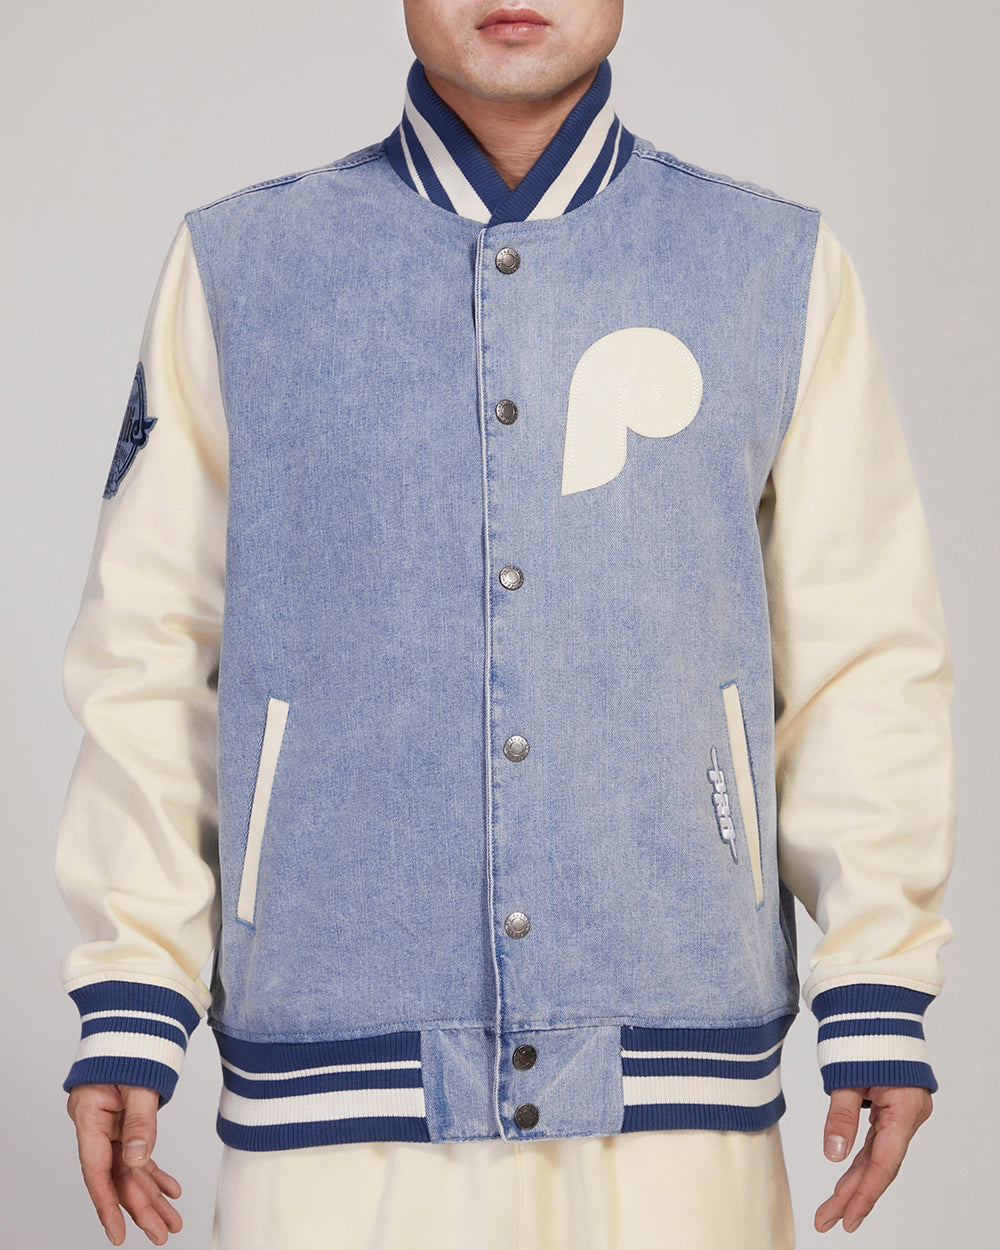 Philadelphia Phillies Varsity Jacket Size Men's 3XL - Maker of Jacket